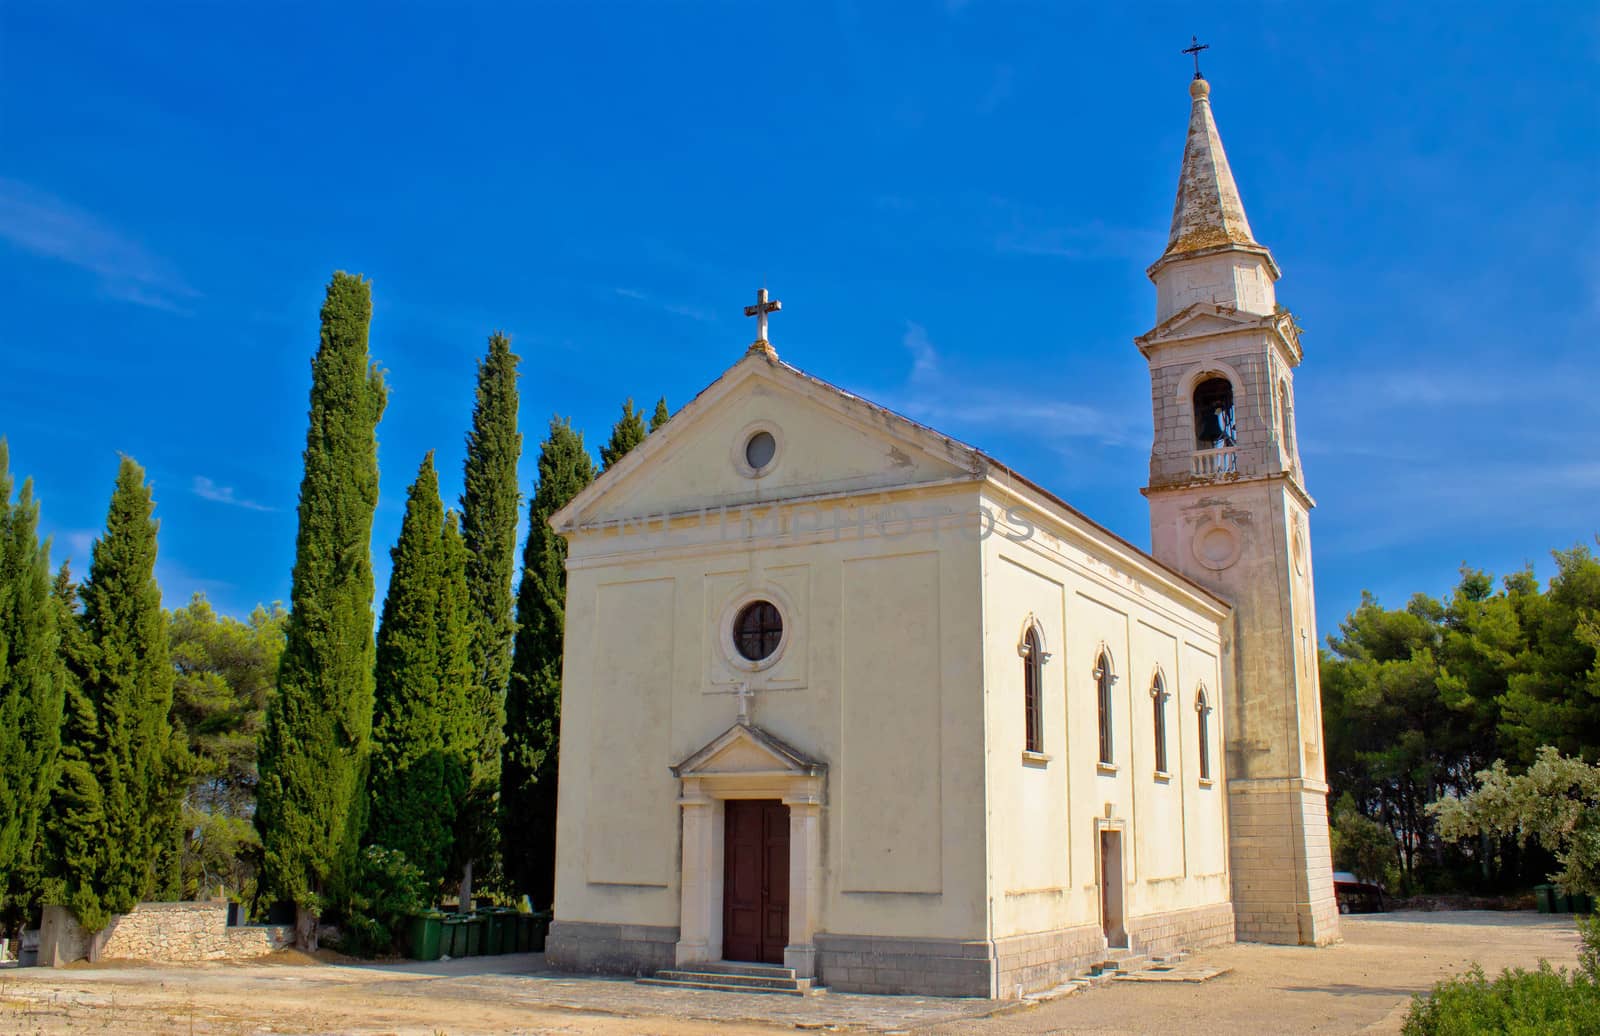 Island of Iz stone church, Dalmatia, Croatia